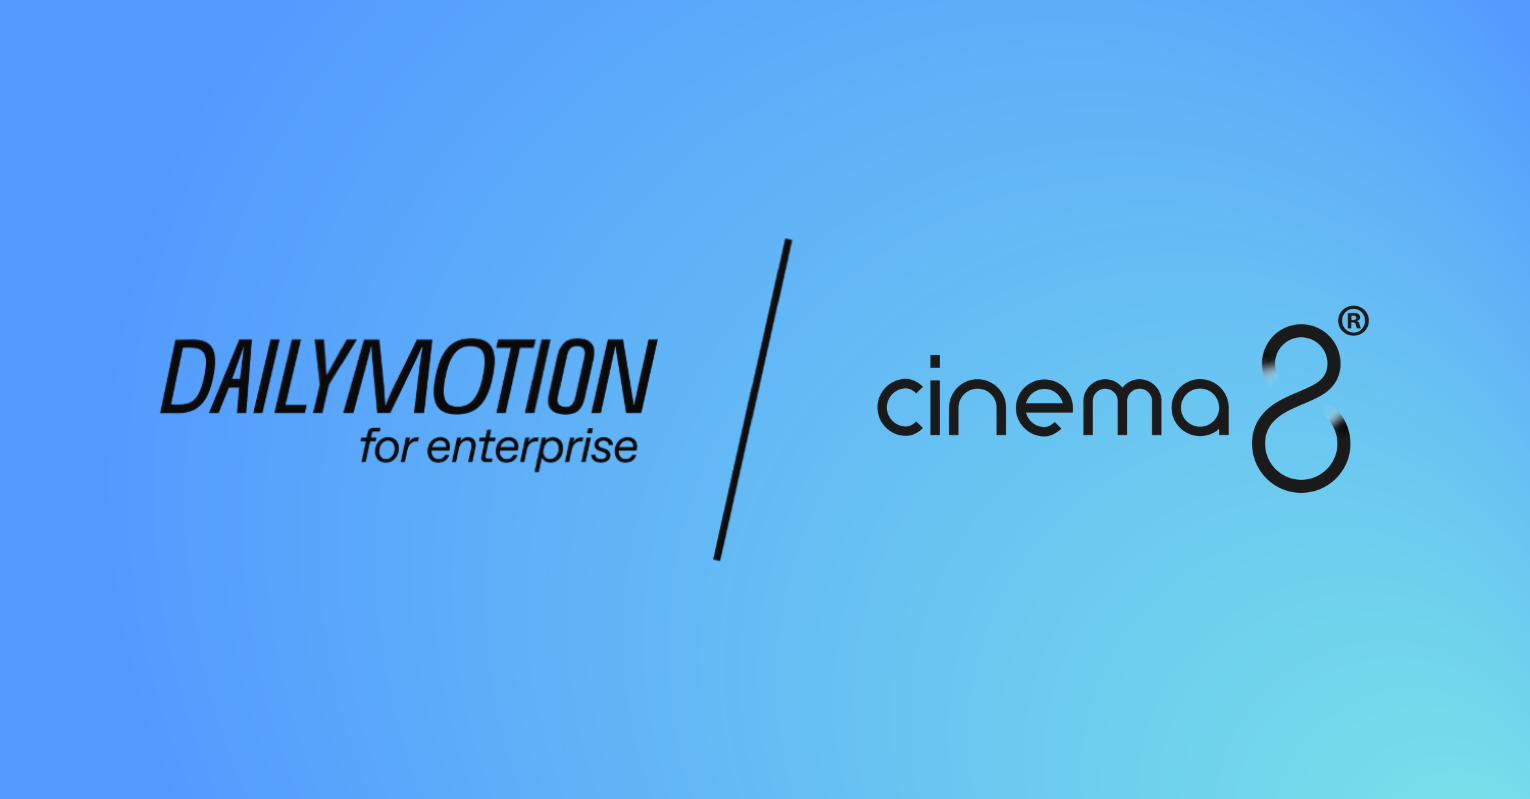 Cinema8 ve Dailymotion, Interaktif Video Alanında Stratejik Bir Ortaklığa İmza Attı